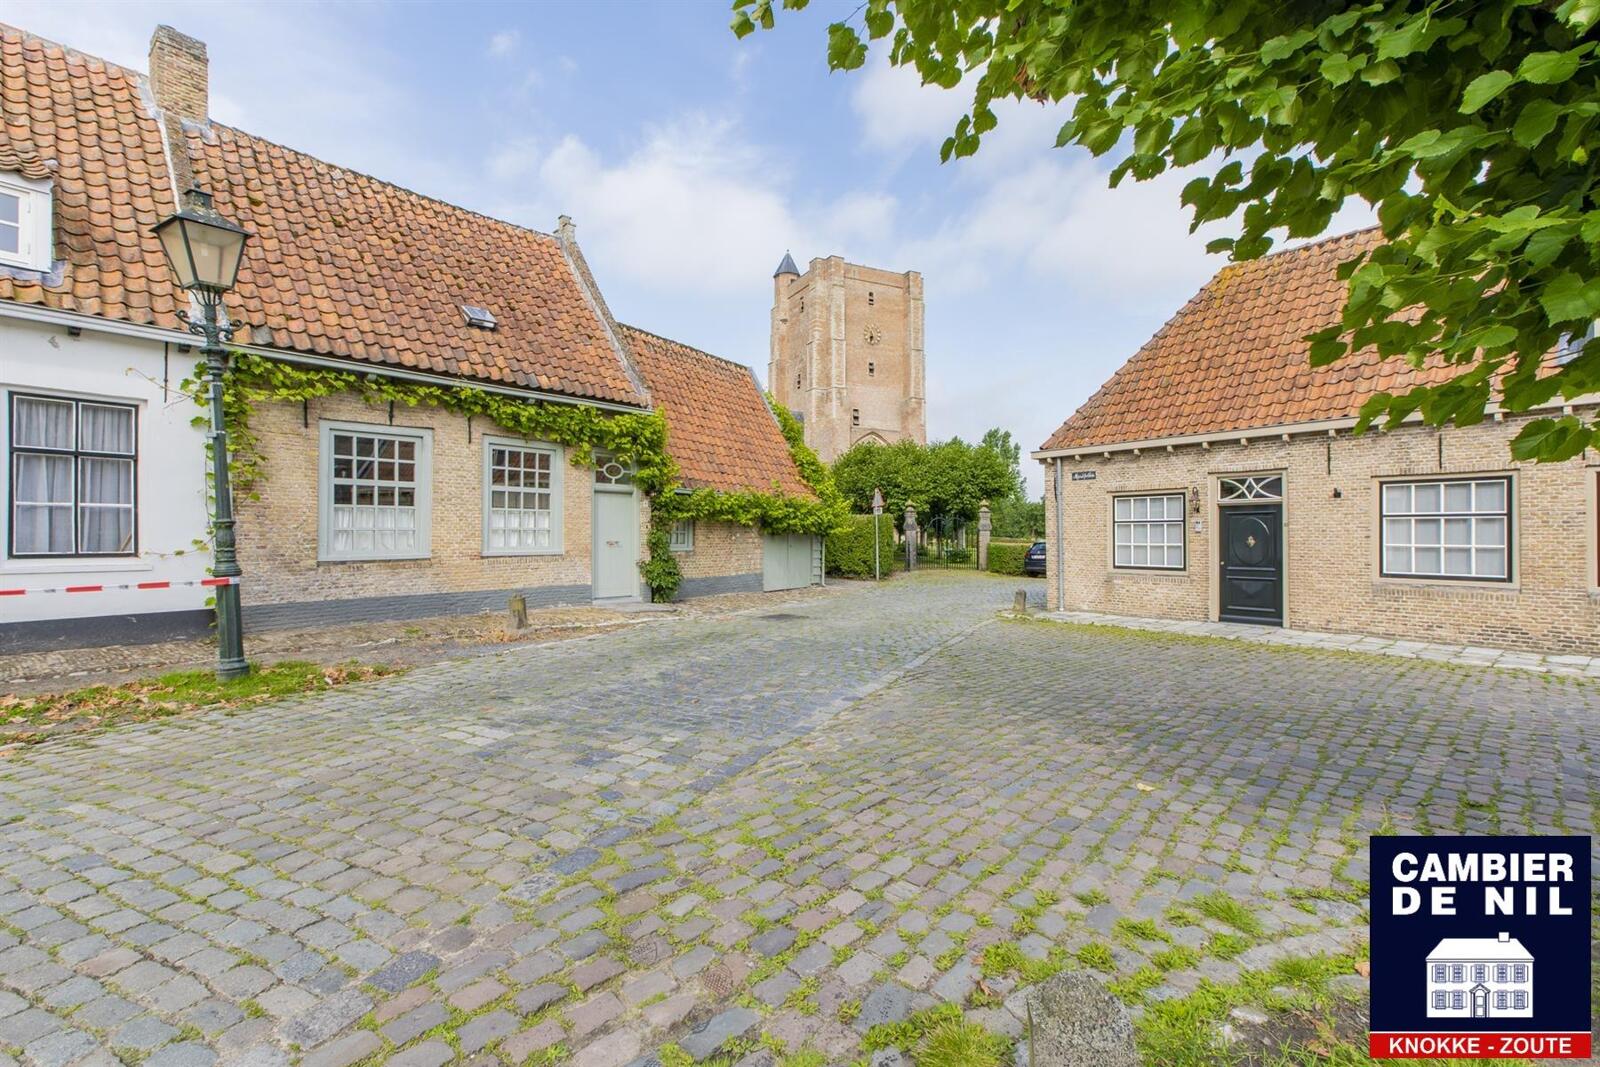 Maison charmante situé entre Sluis et Knokke 20